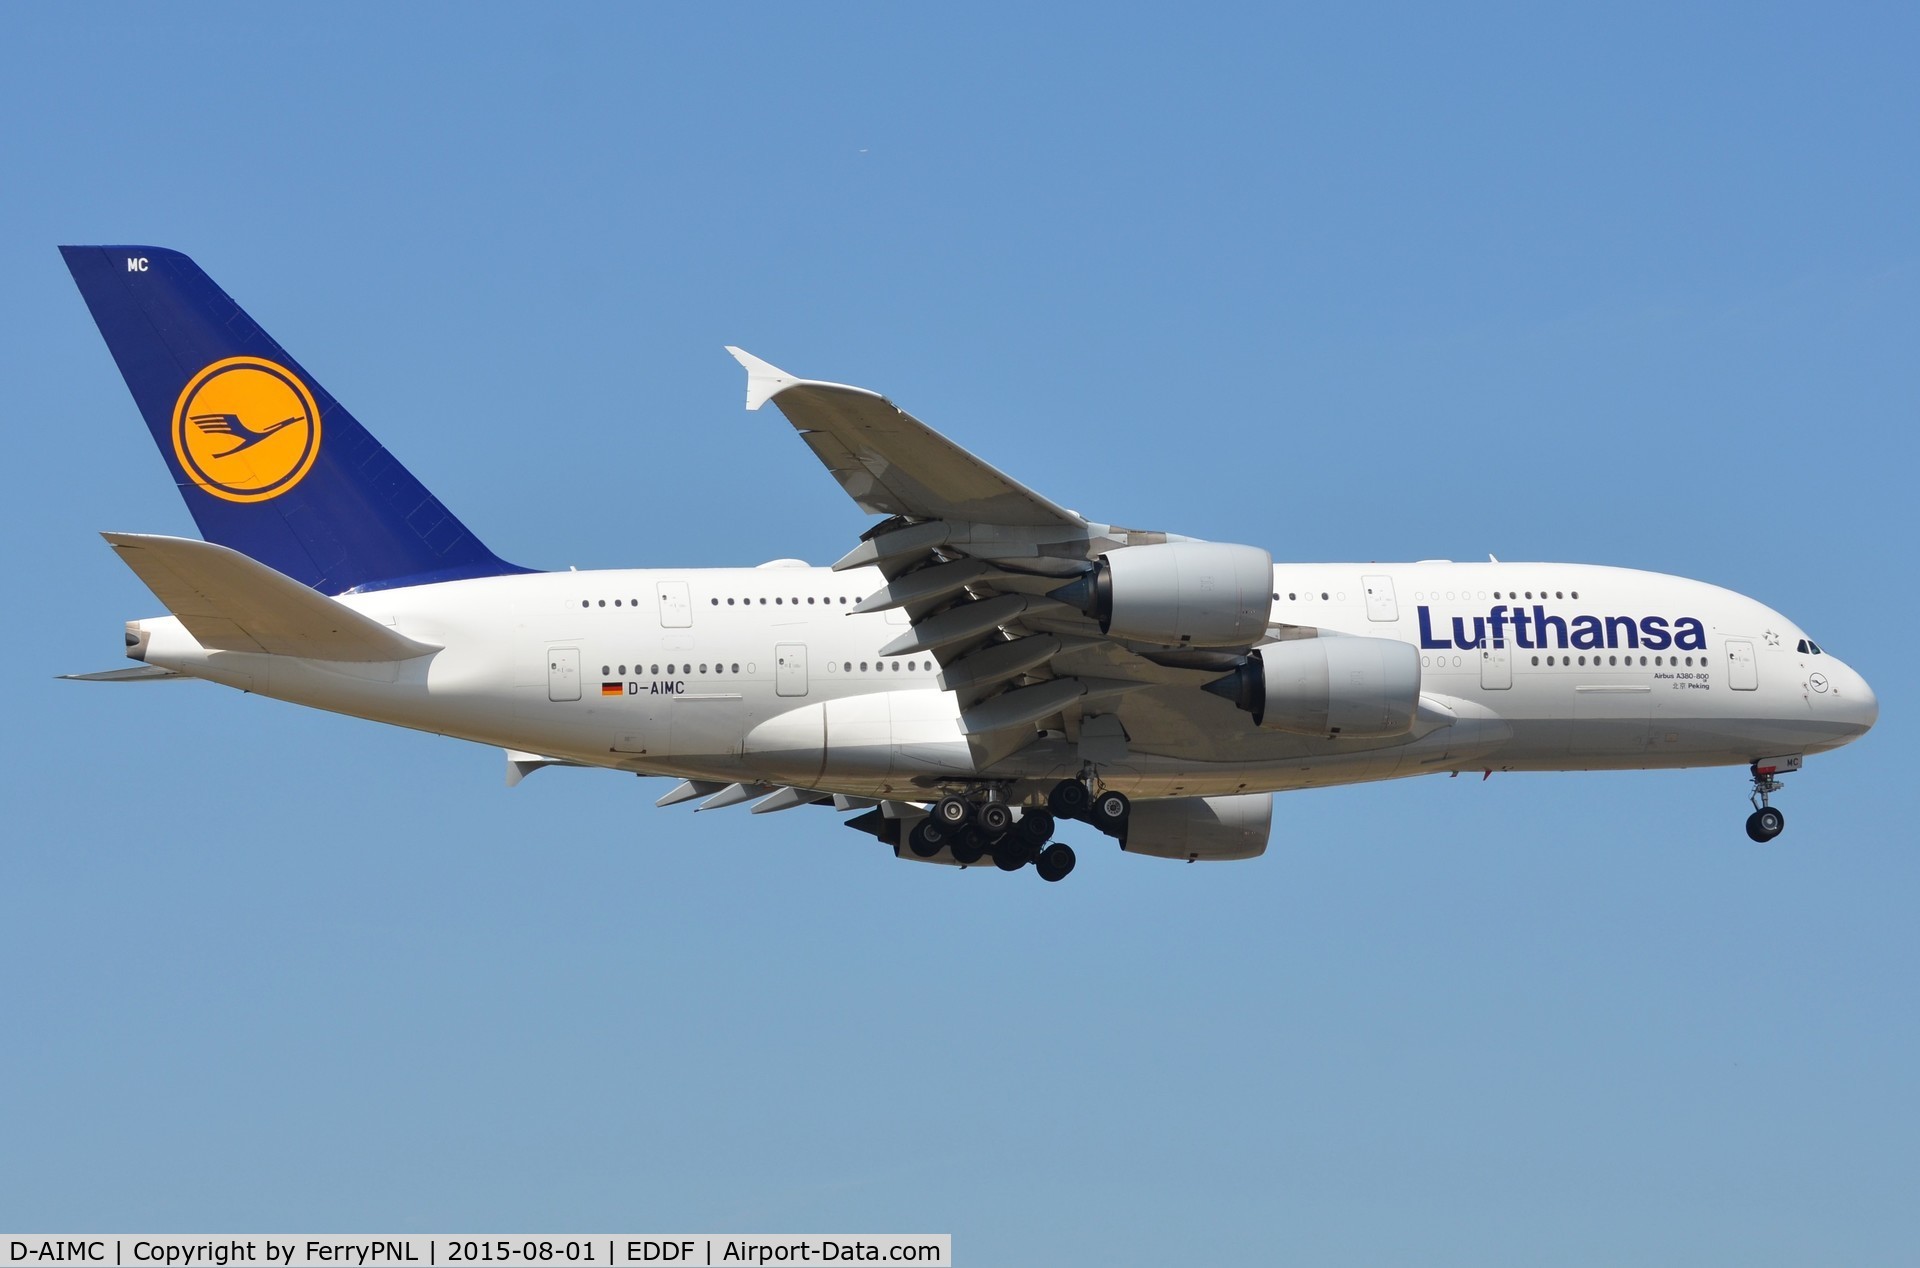 D-AIMC, 2010 Airbus A380-841 C/N 044, Lufthansa A388 on short finals.